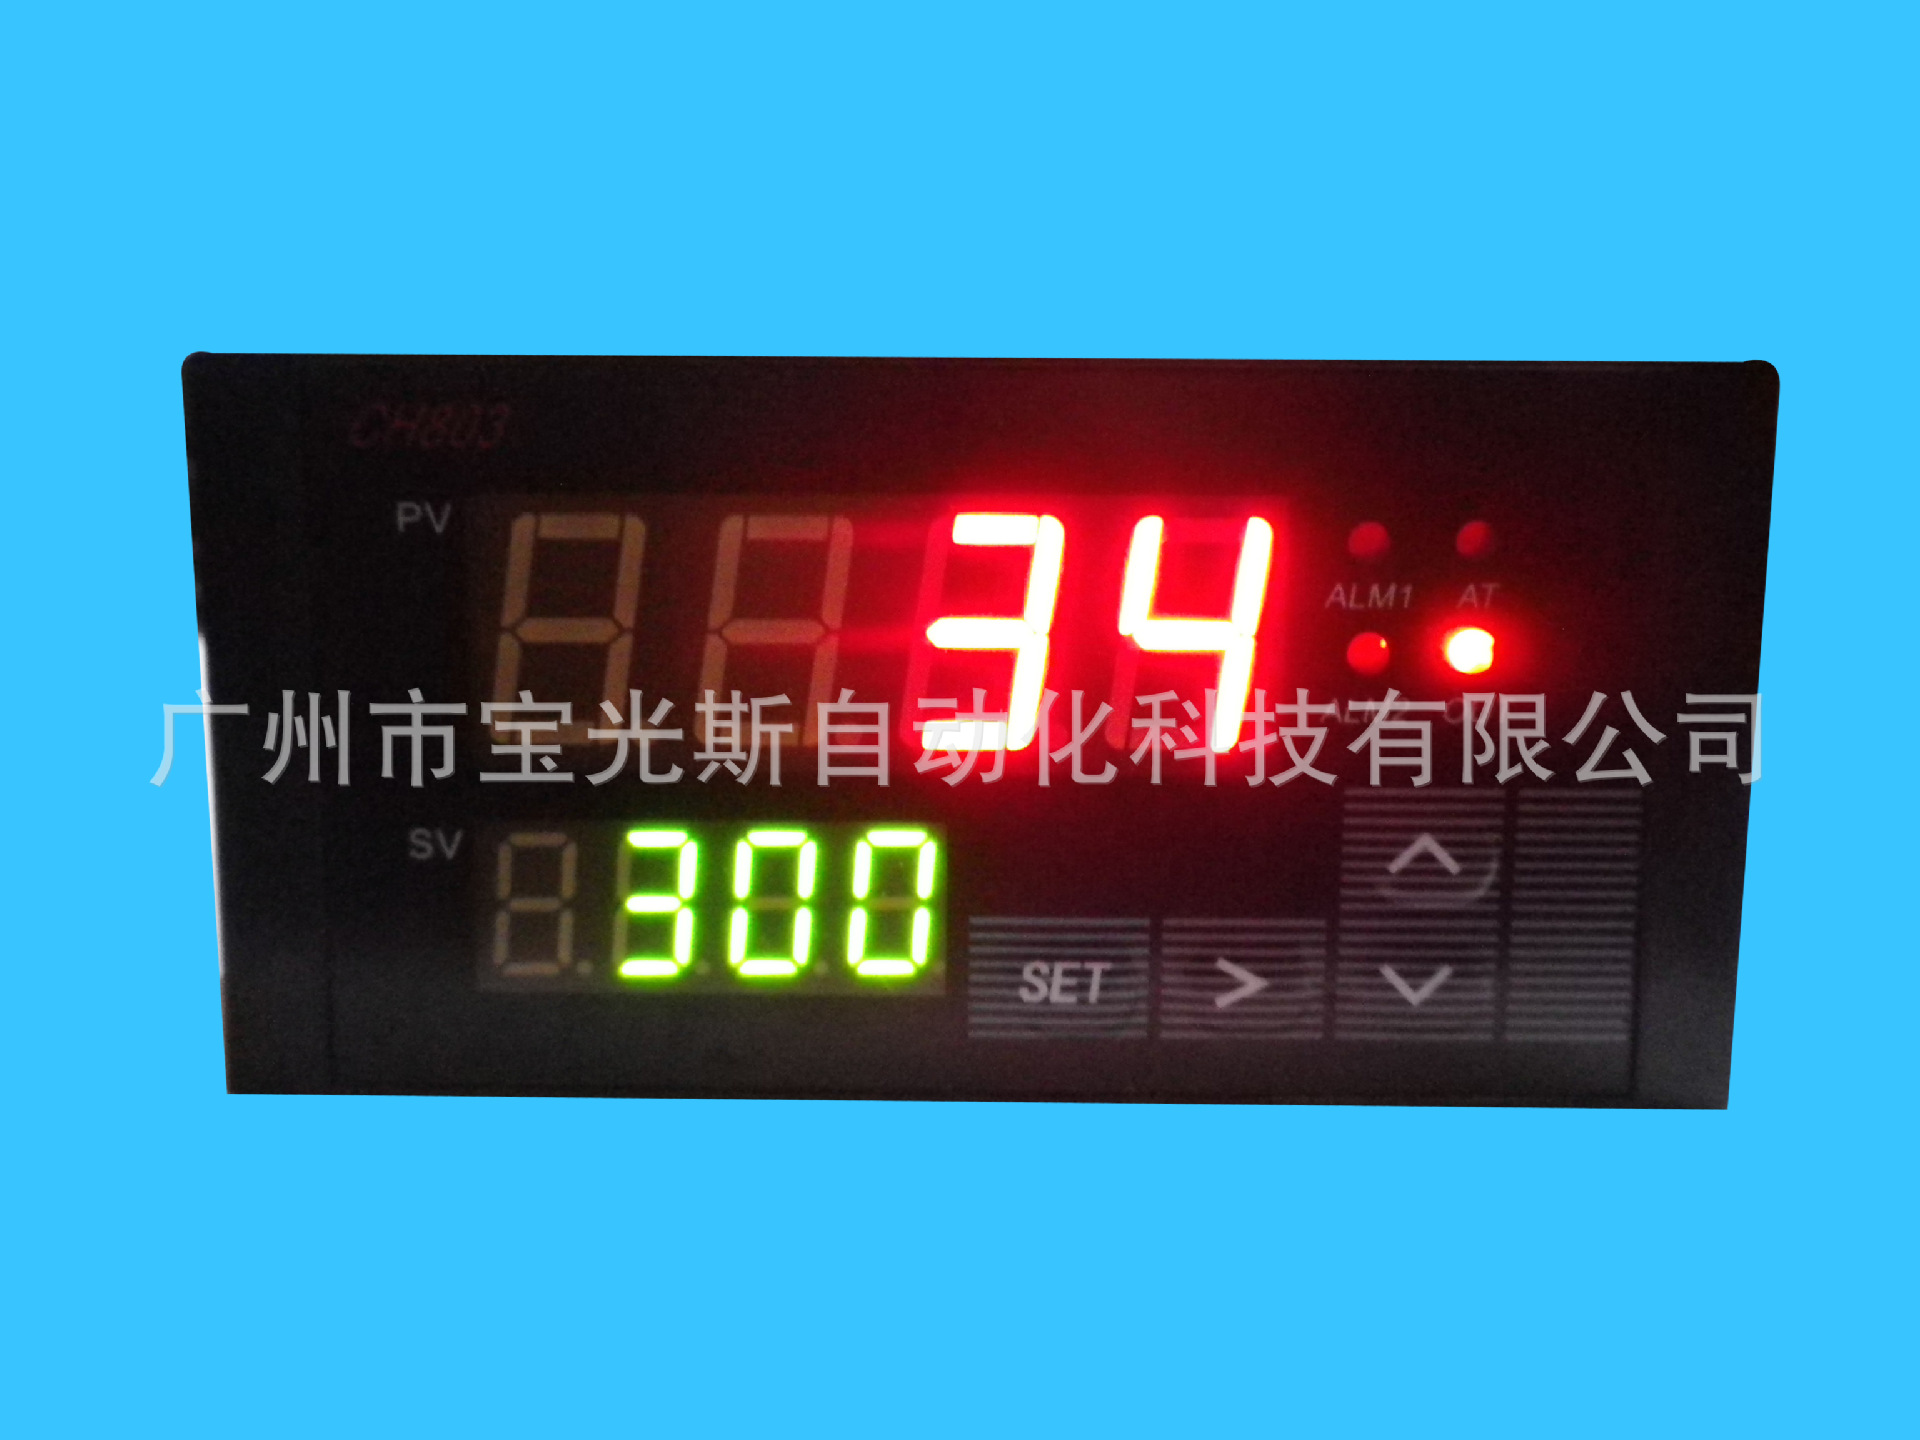 厂家直销宝光温度控制器p831温度控制表 精度高测温准